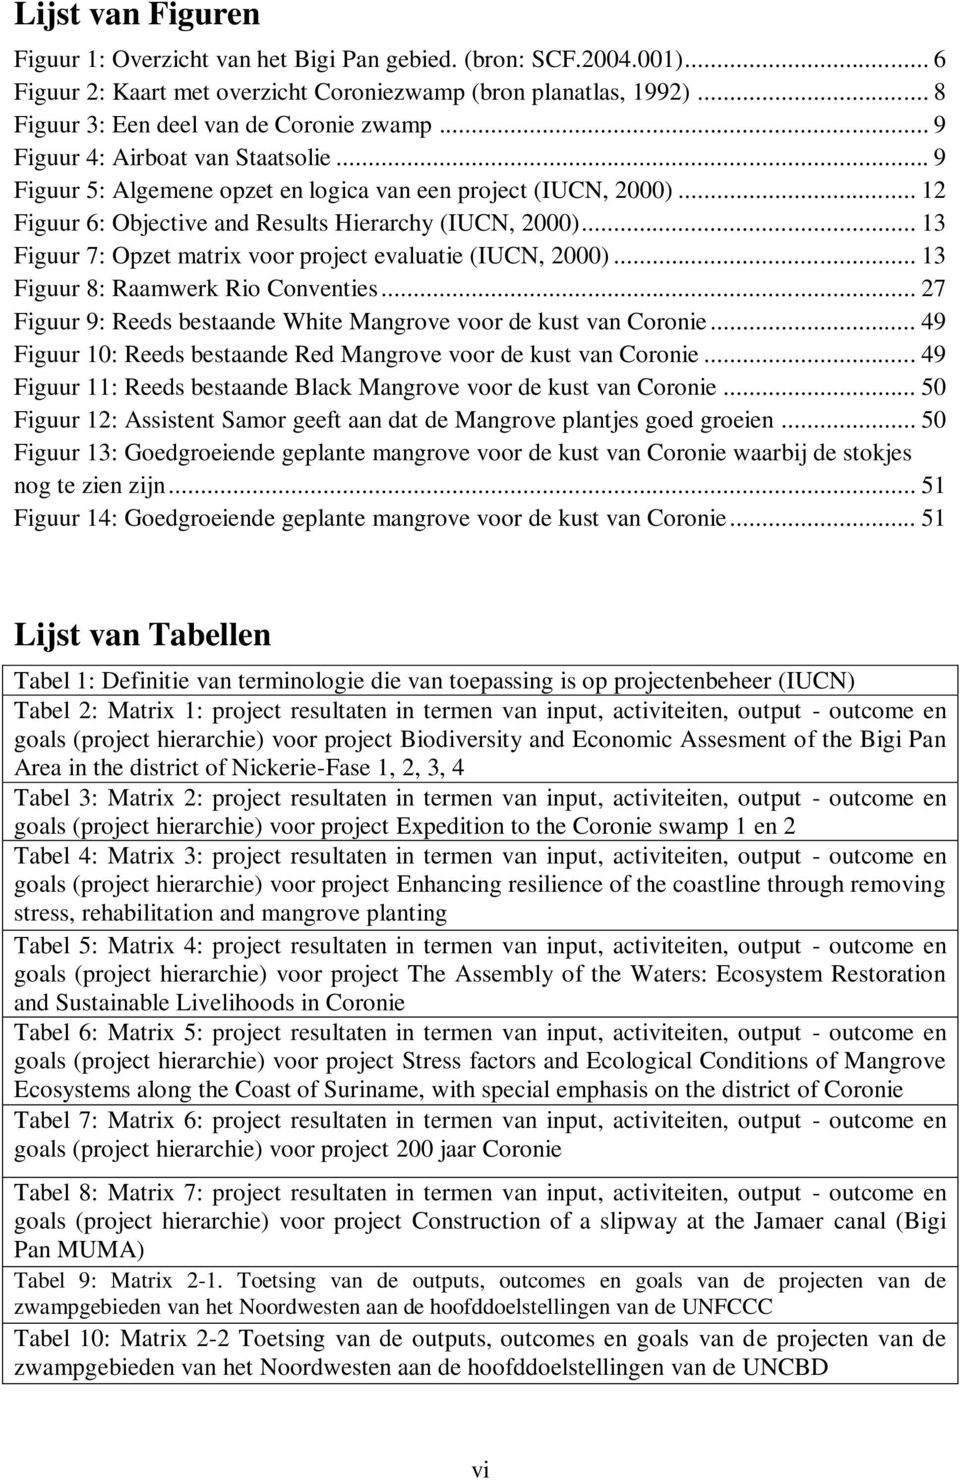 .. 13 Figuur 7: Opzet matrix voor project evaluatie (IUCN, 2000)... 13 Figuur 8: Raamwerk Rio Conventies... 27 Figuur 9: Reeds bestaande White Mangrove voor de kust van Coronie.